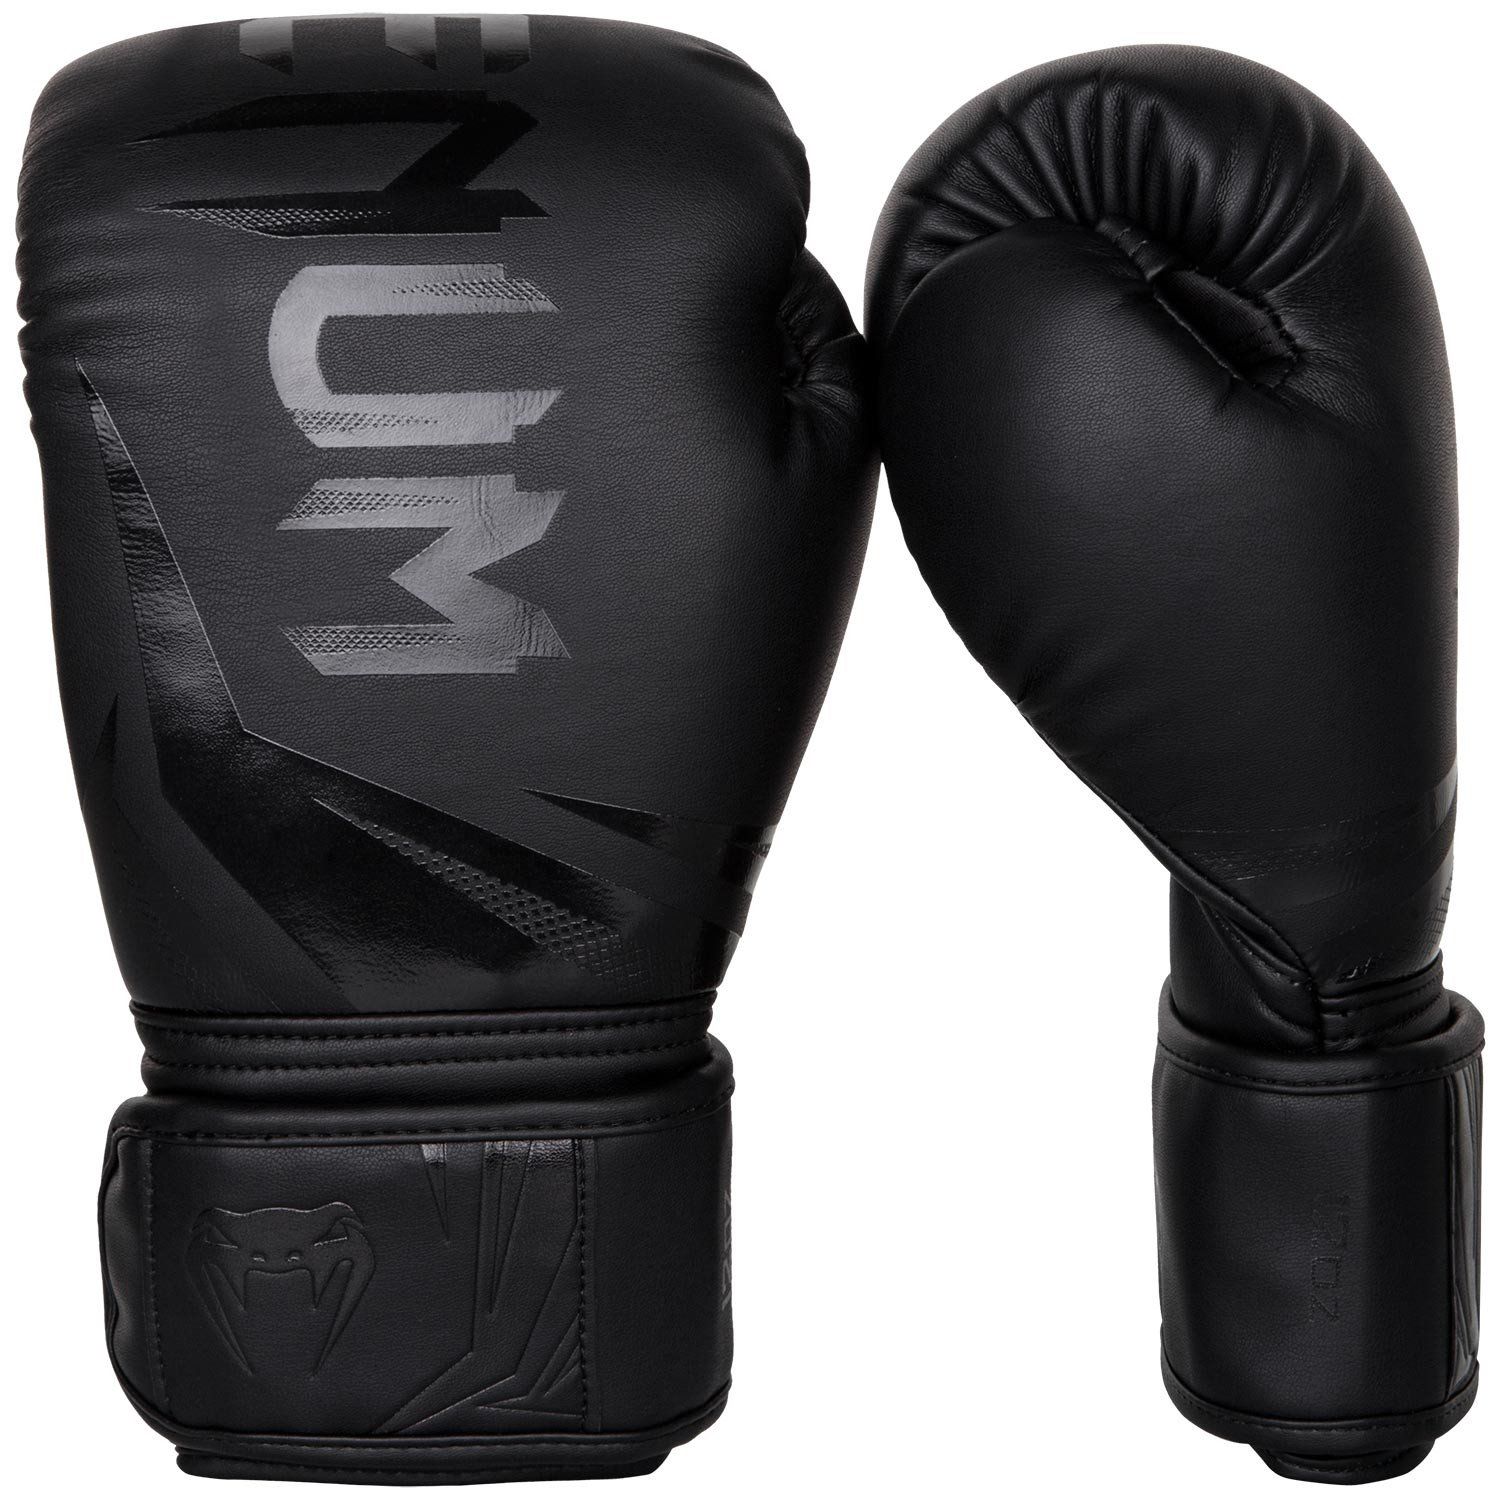 Boxerské rukavice Challenger 3.0 černé VENUM vel. 12 oz